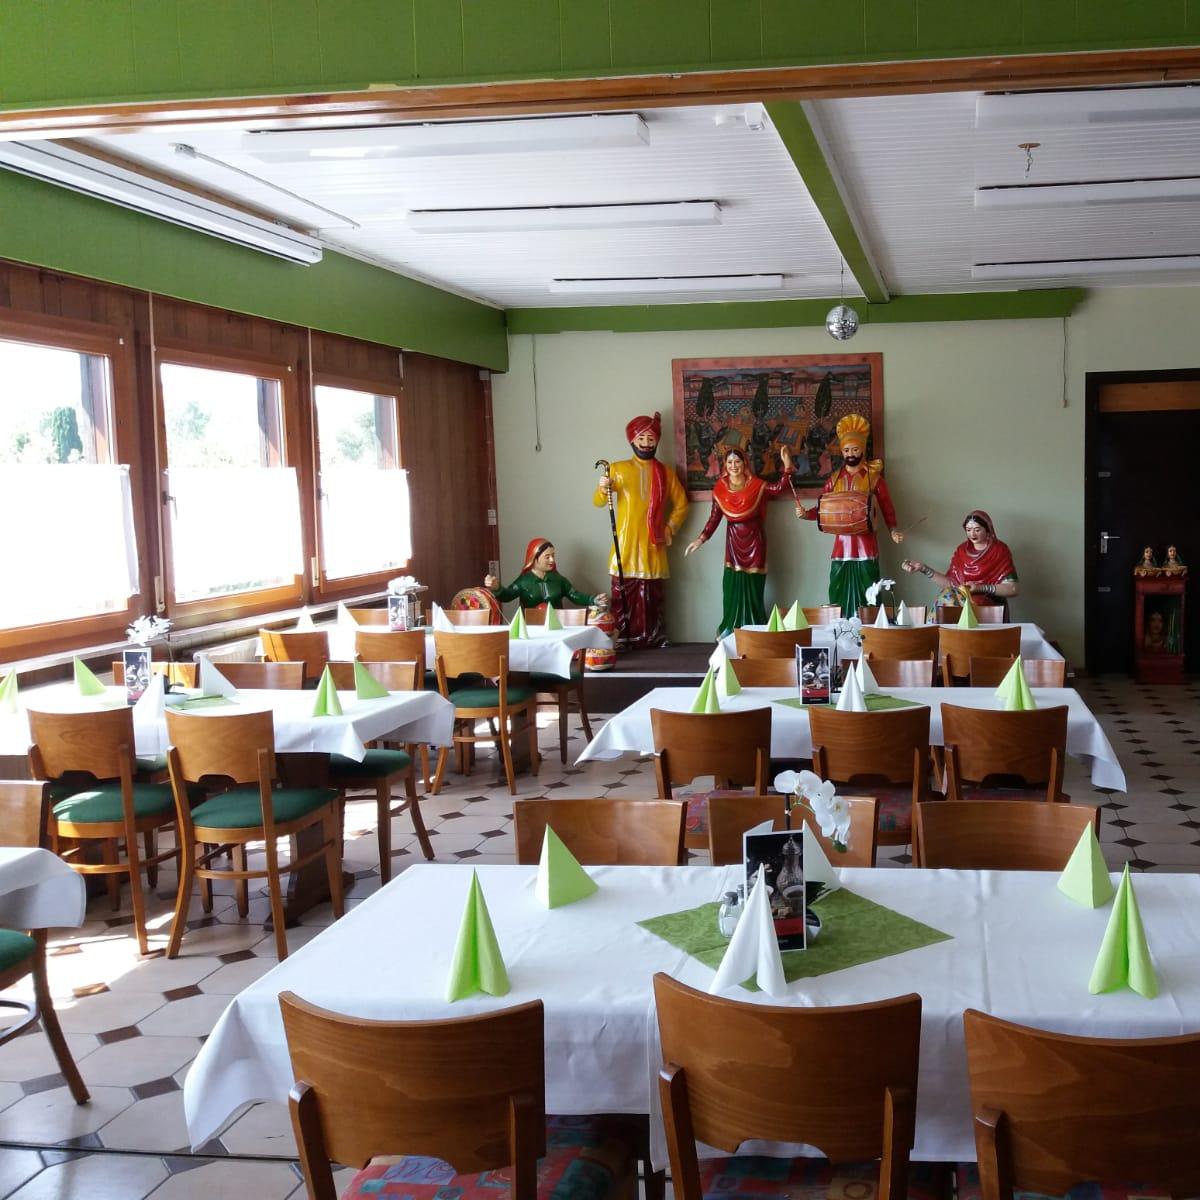 Restaurant "Badal